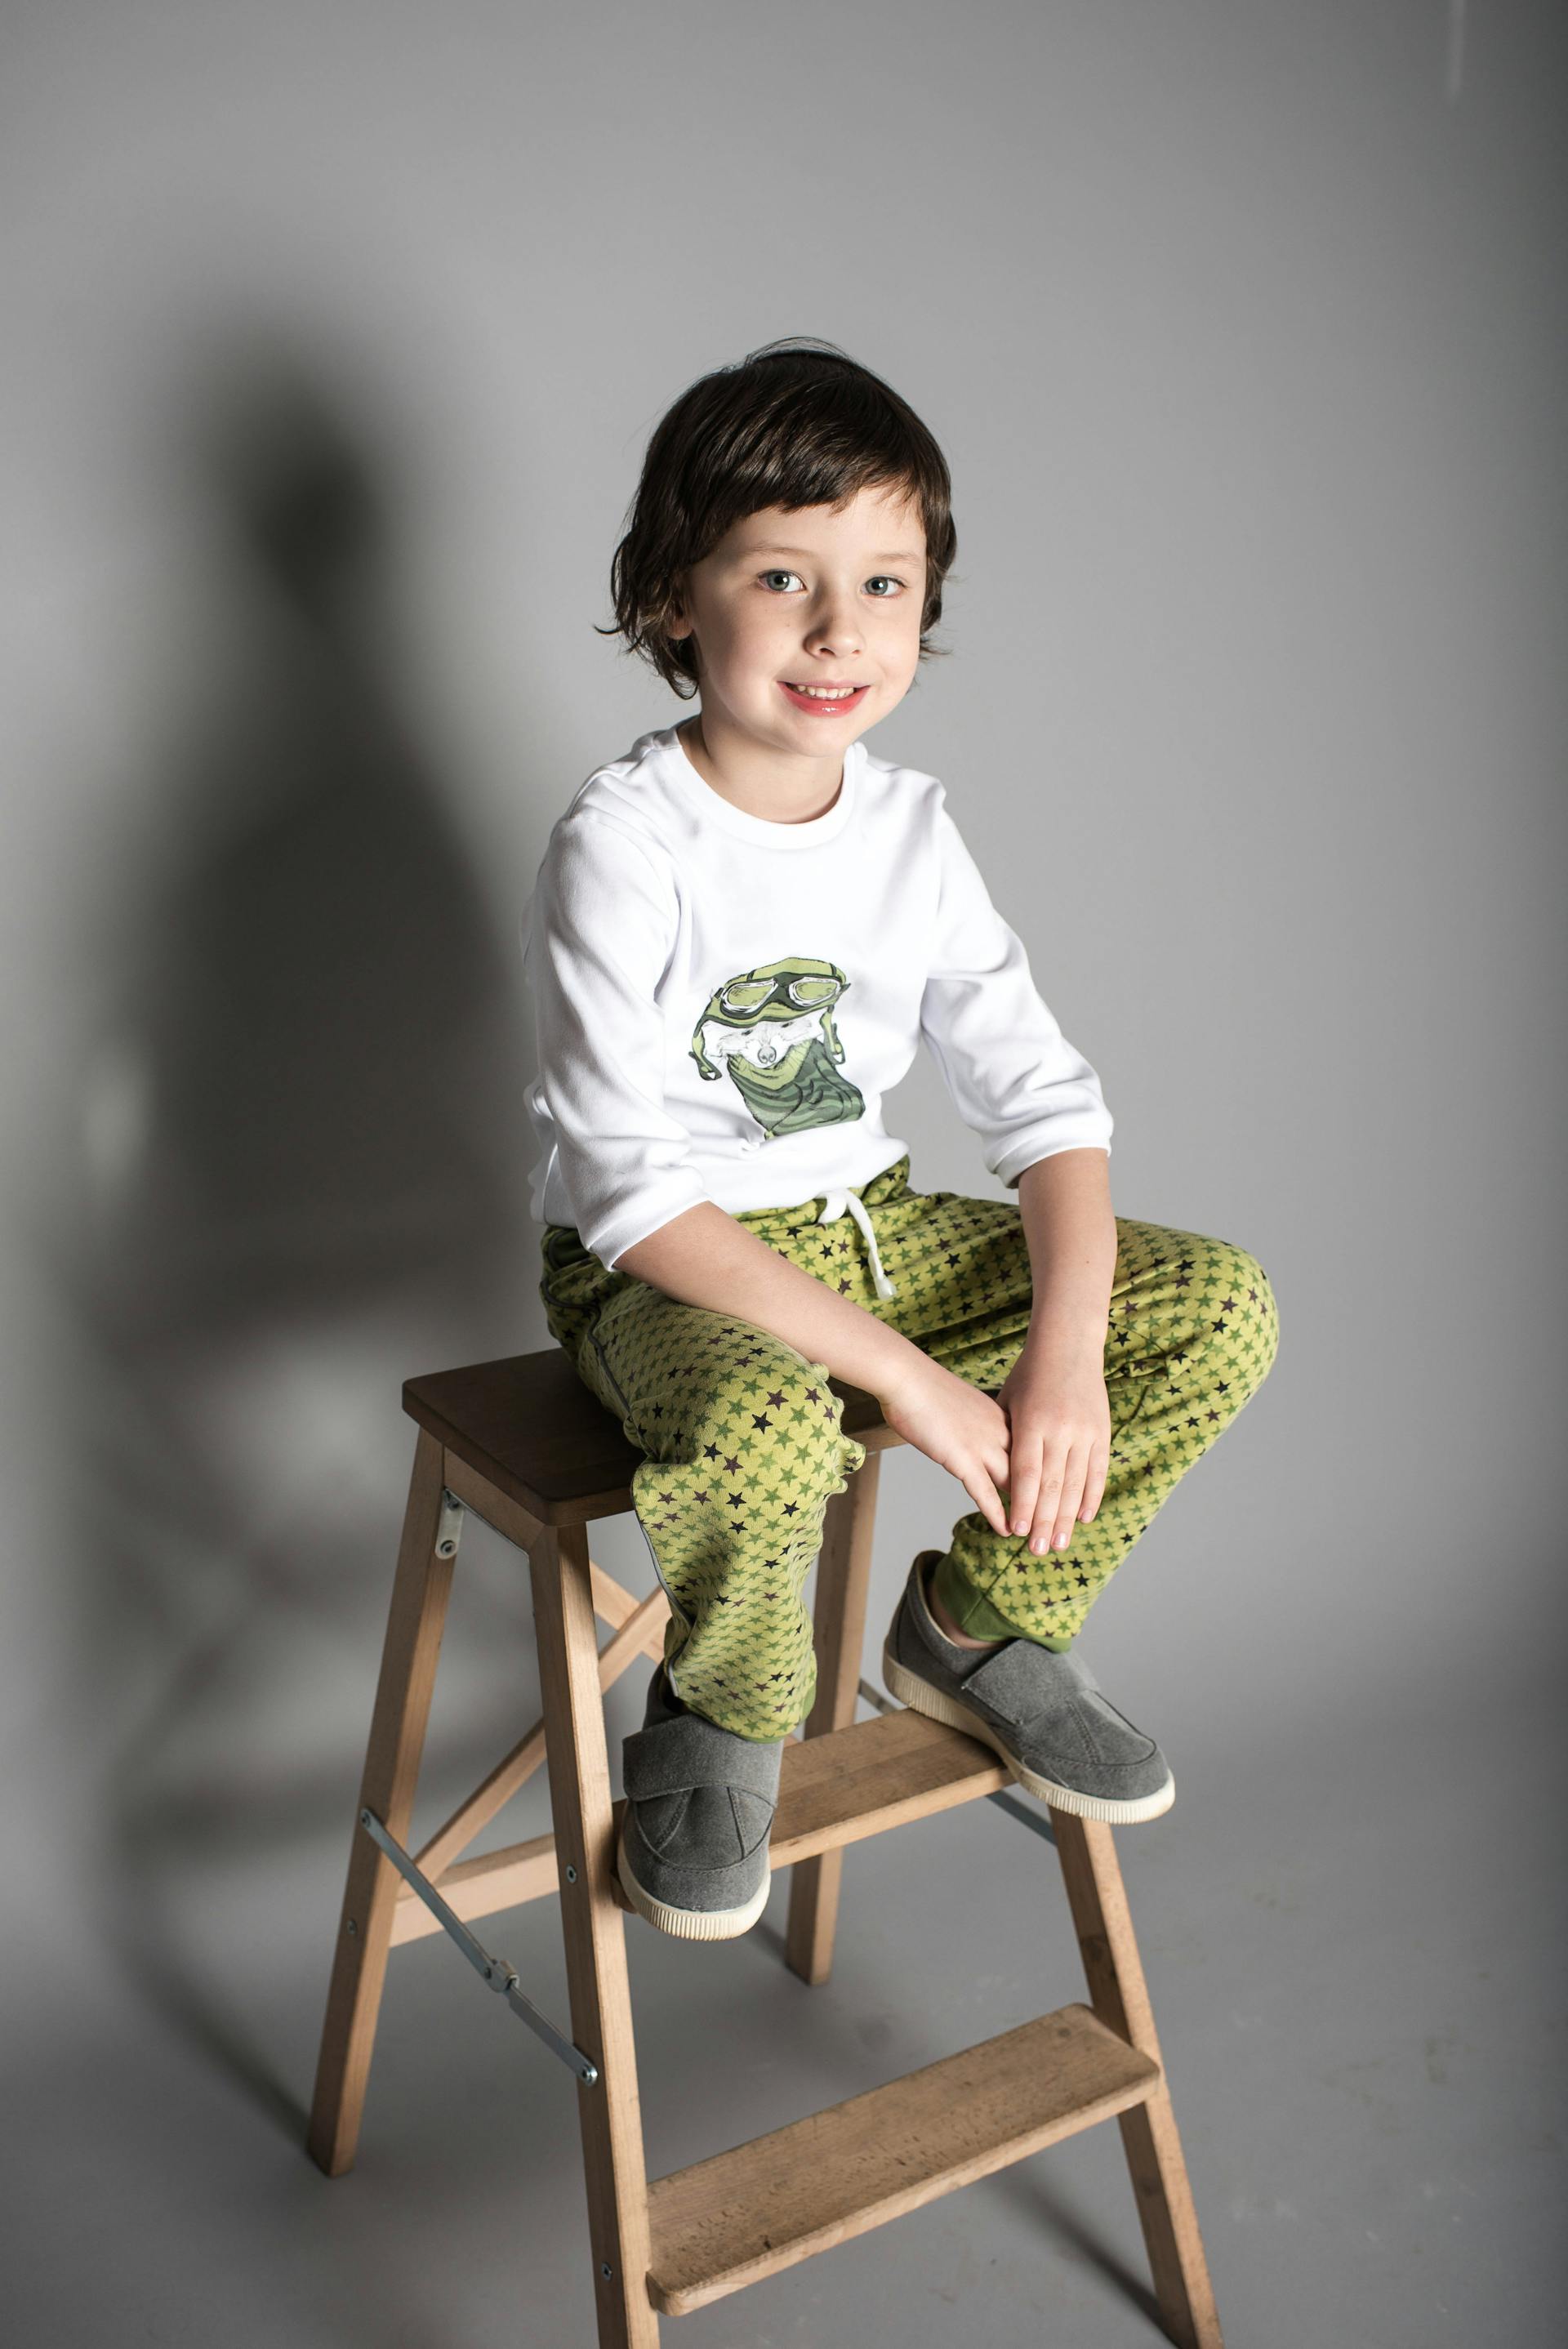 Ein lächelnder kleiner Junge sitzt auf einem Hocker | Quelle: Pexels